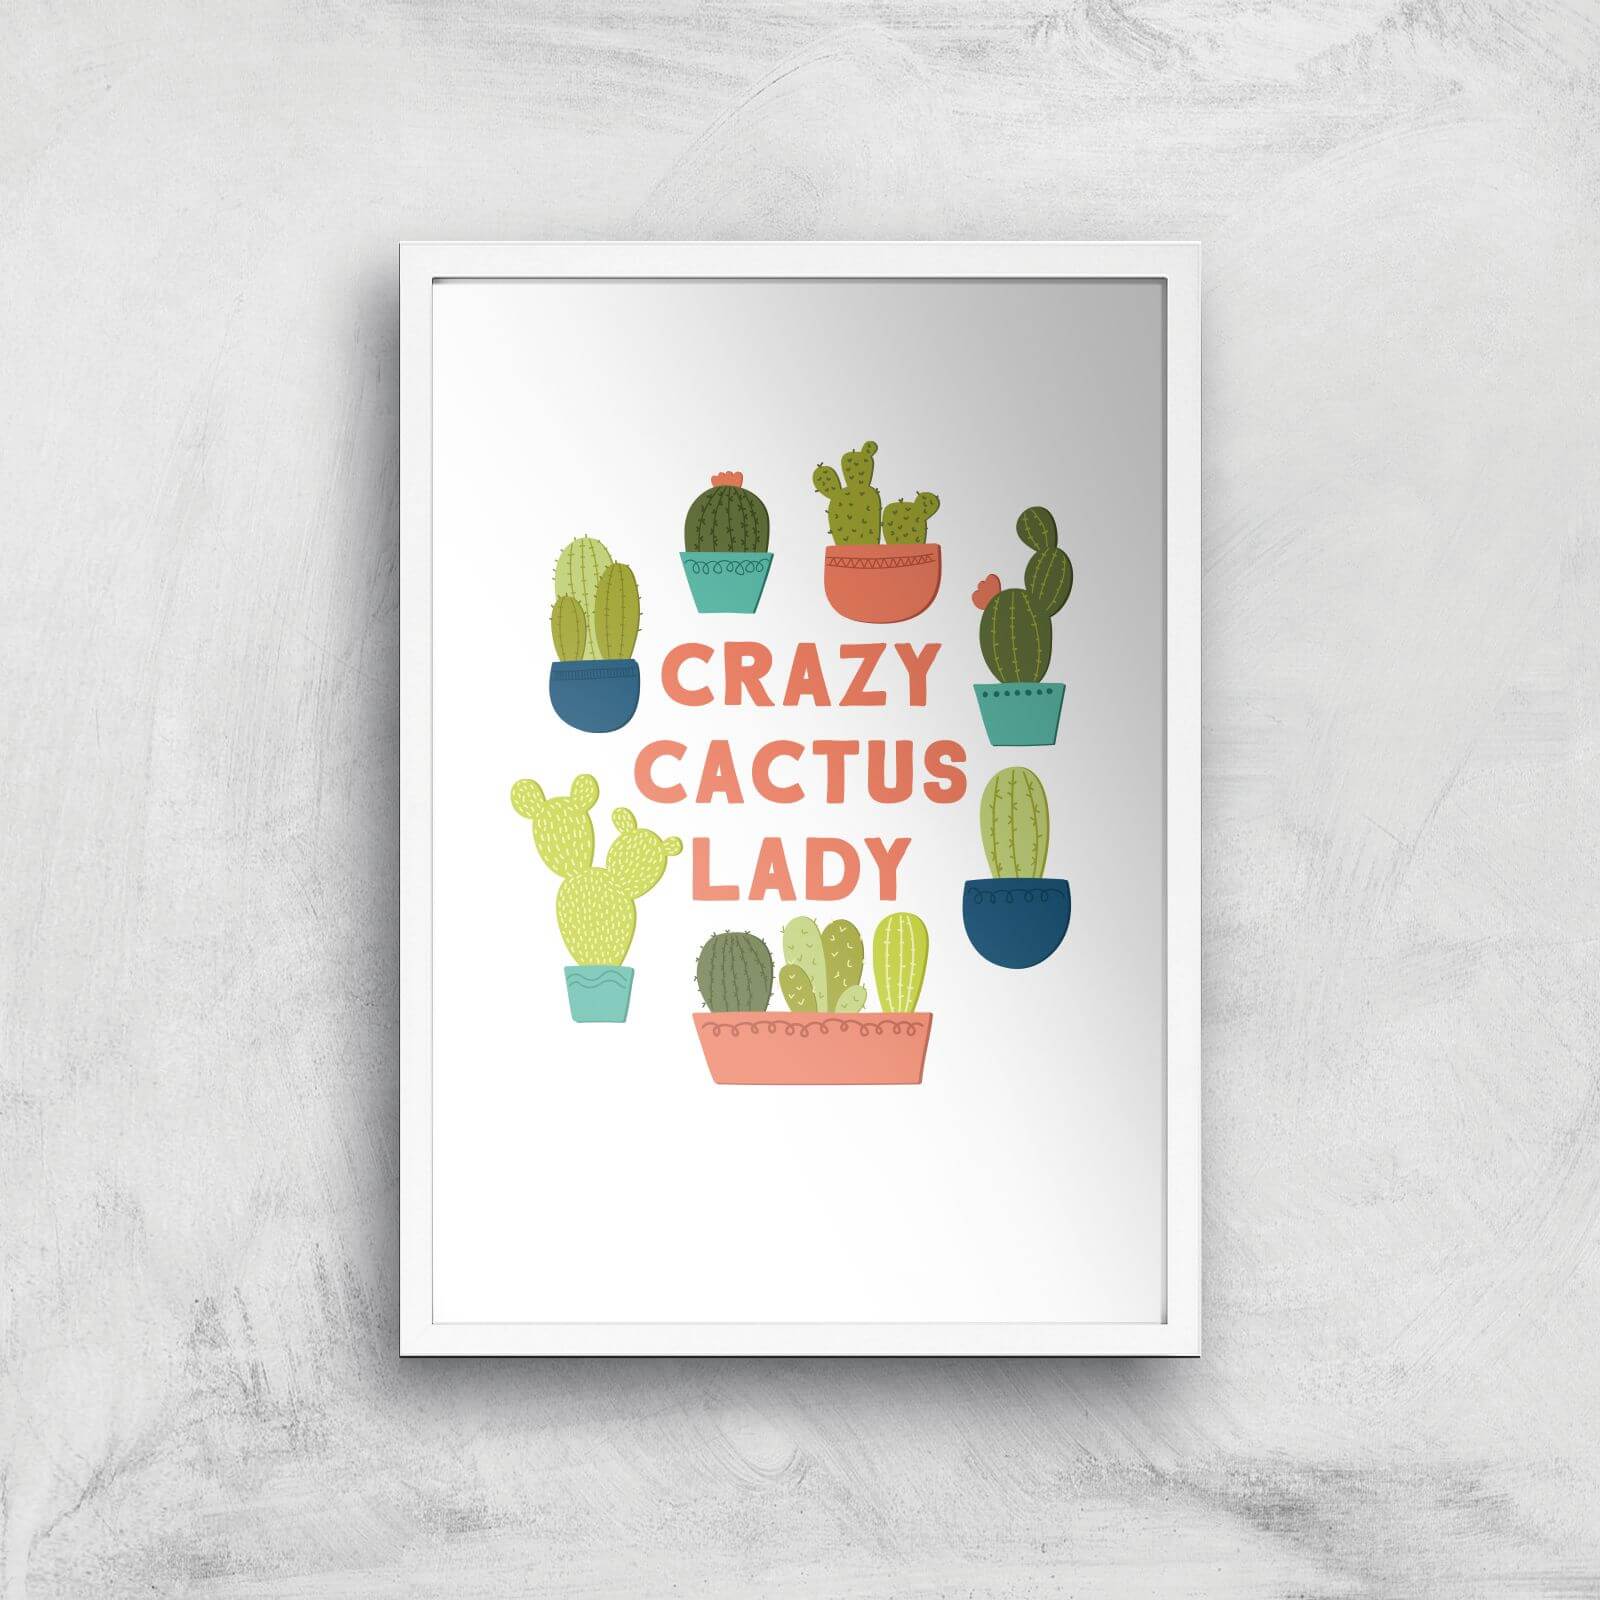 Crazy Cactus Lady Art Print - A4 - White Frame